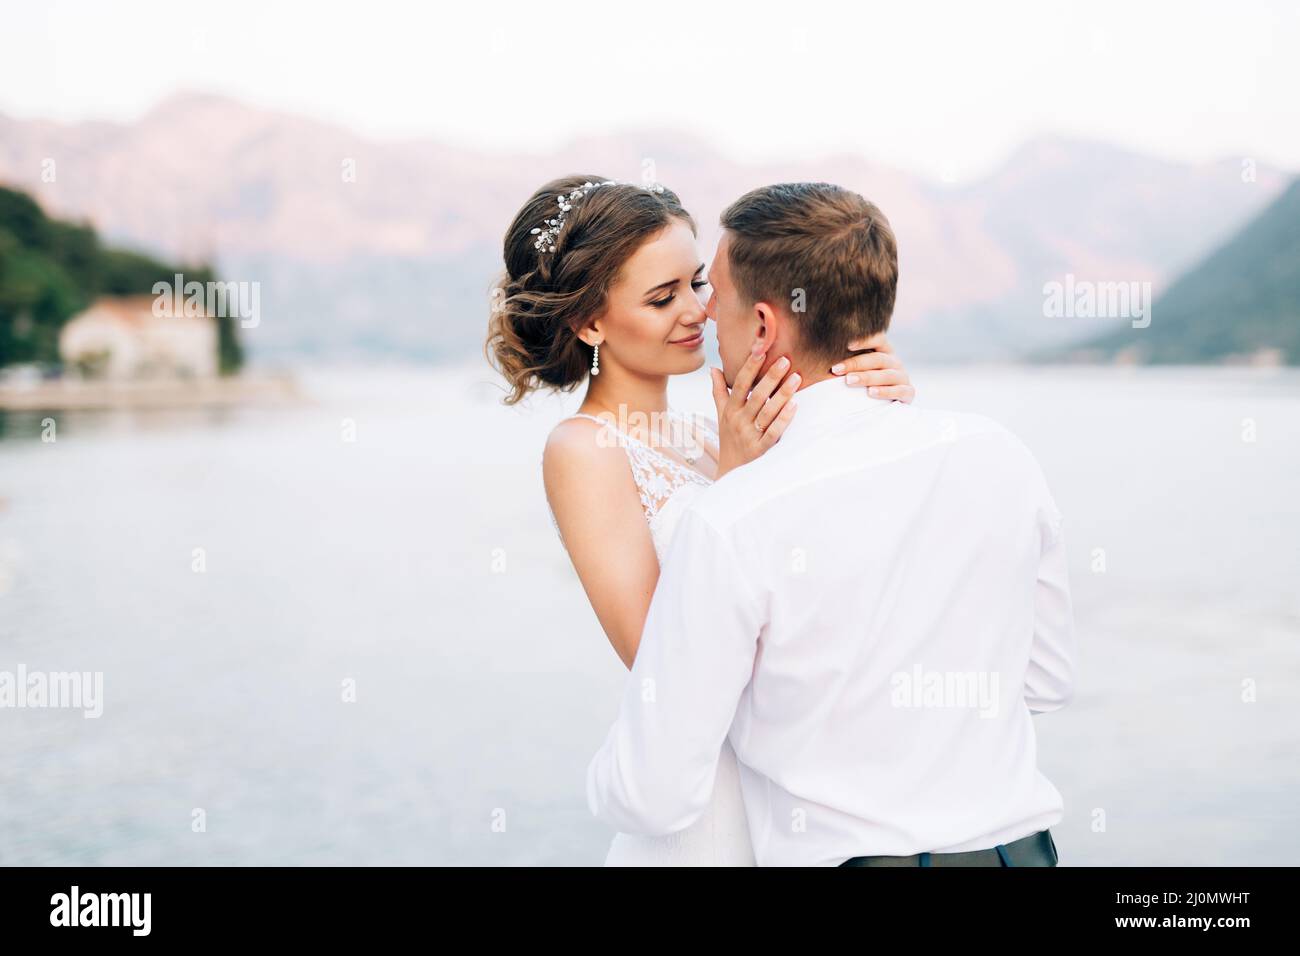 Kotor, Montenegro - 20.06.17: Braut umarmt und küsst sich fast vor der Kulisse der Berge und des Meeres. Nahaufnahme Stockfoto